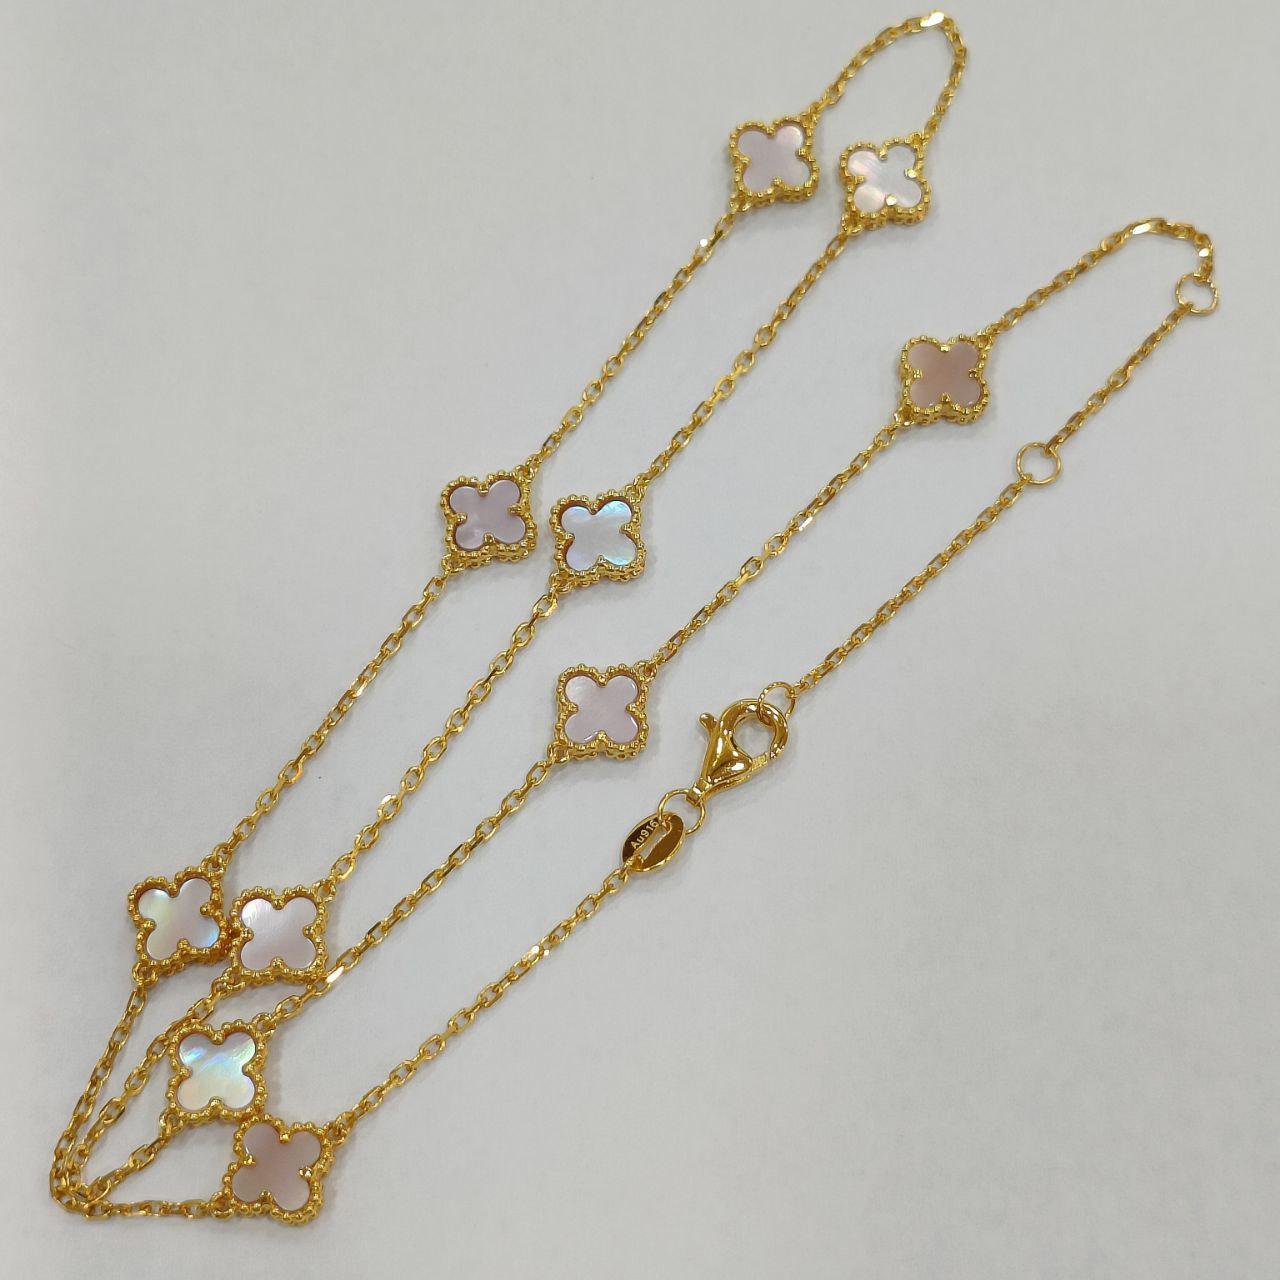 22K / 916 Gold Ten Clover Necklace-916 gold-Best Gold Shop